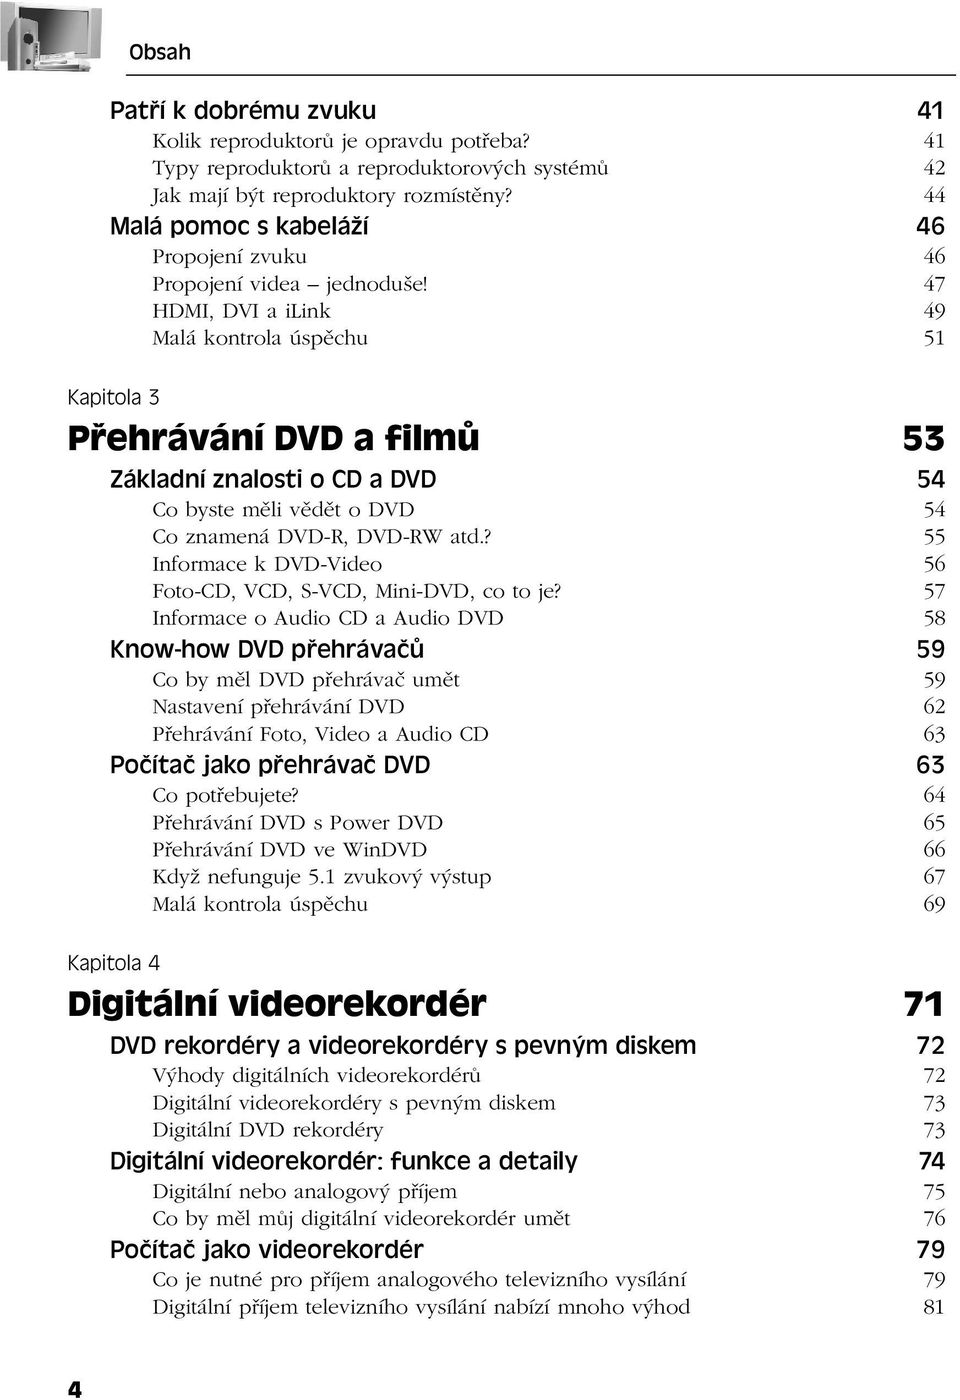 47 HDMI, DVI a ilink 49 Malá kontrola úspěchu 51 Kapitola 3 Přehrávání DVD a filmů 53 Základní znalosti o CD a DVD 54 Co byste měli vědět o DVD 54 Co znamená DVD-R, DVD-RW atd.